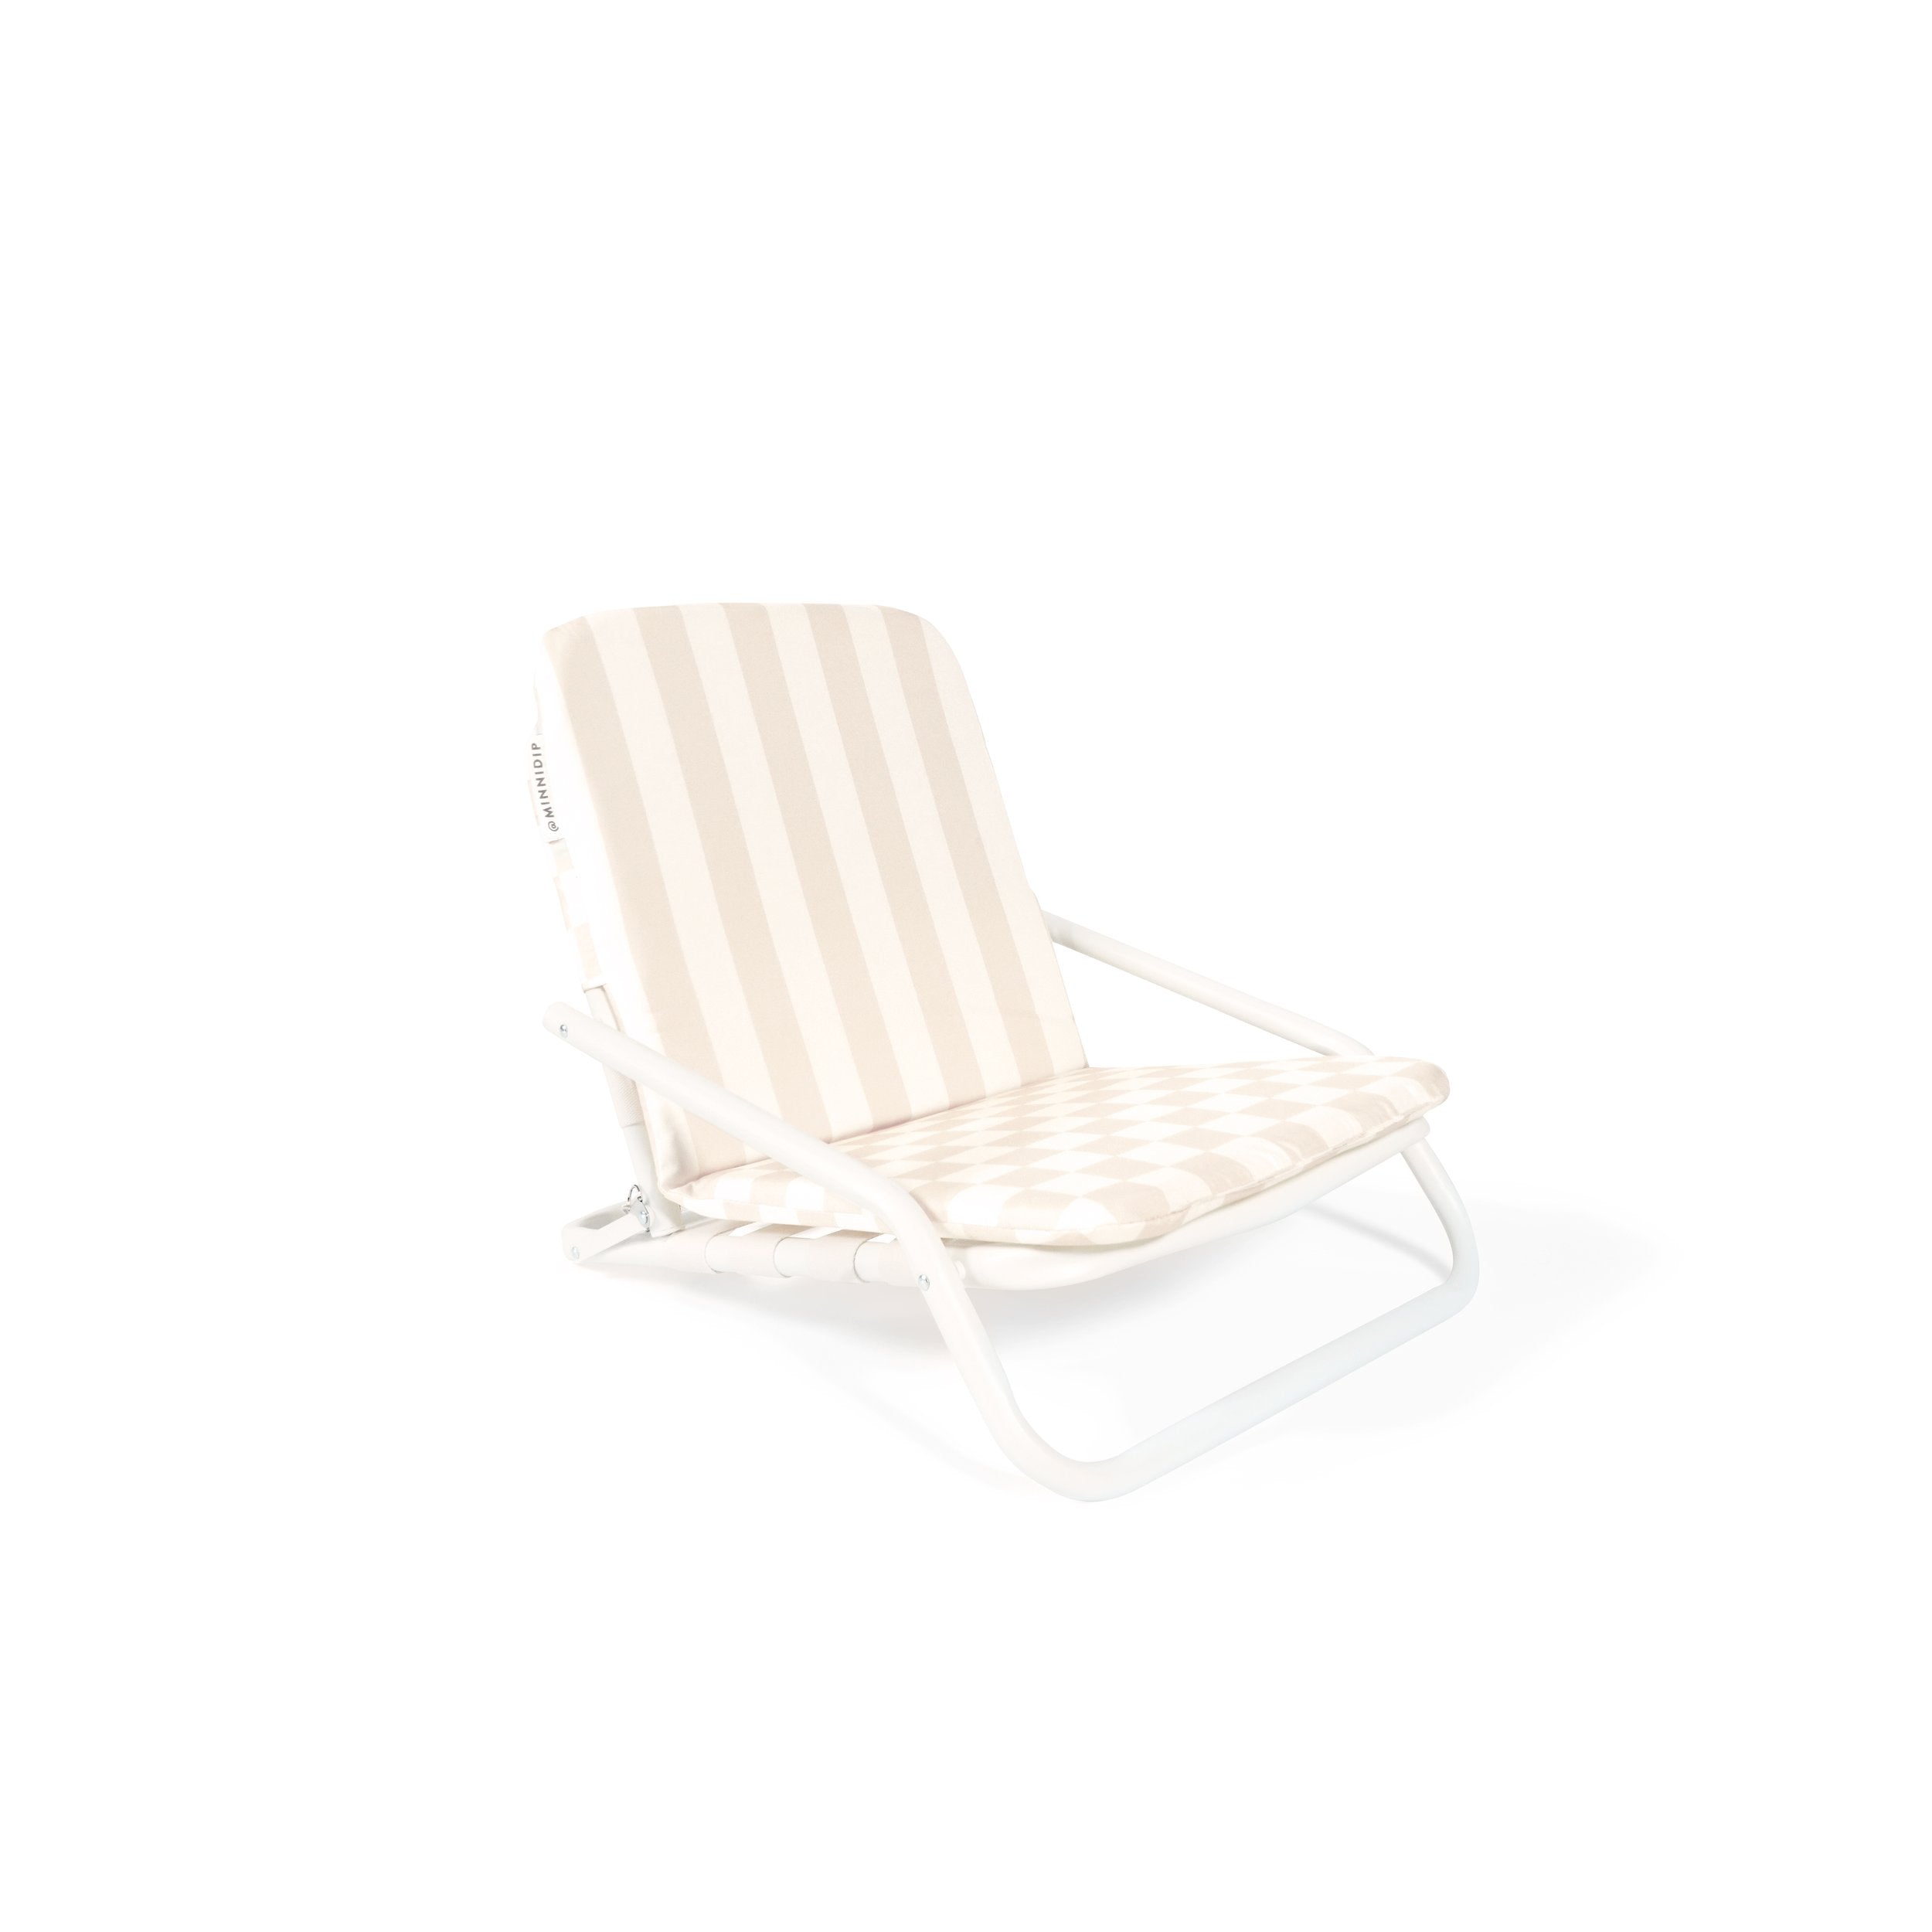 the CHECKER CABANA STRIPE Beach Chair